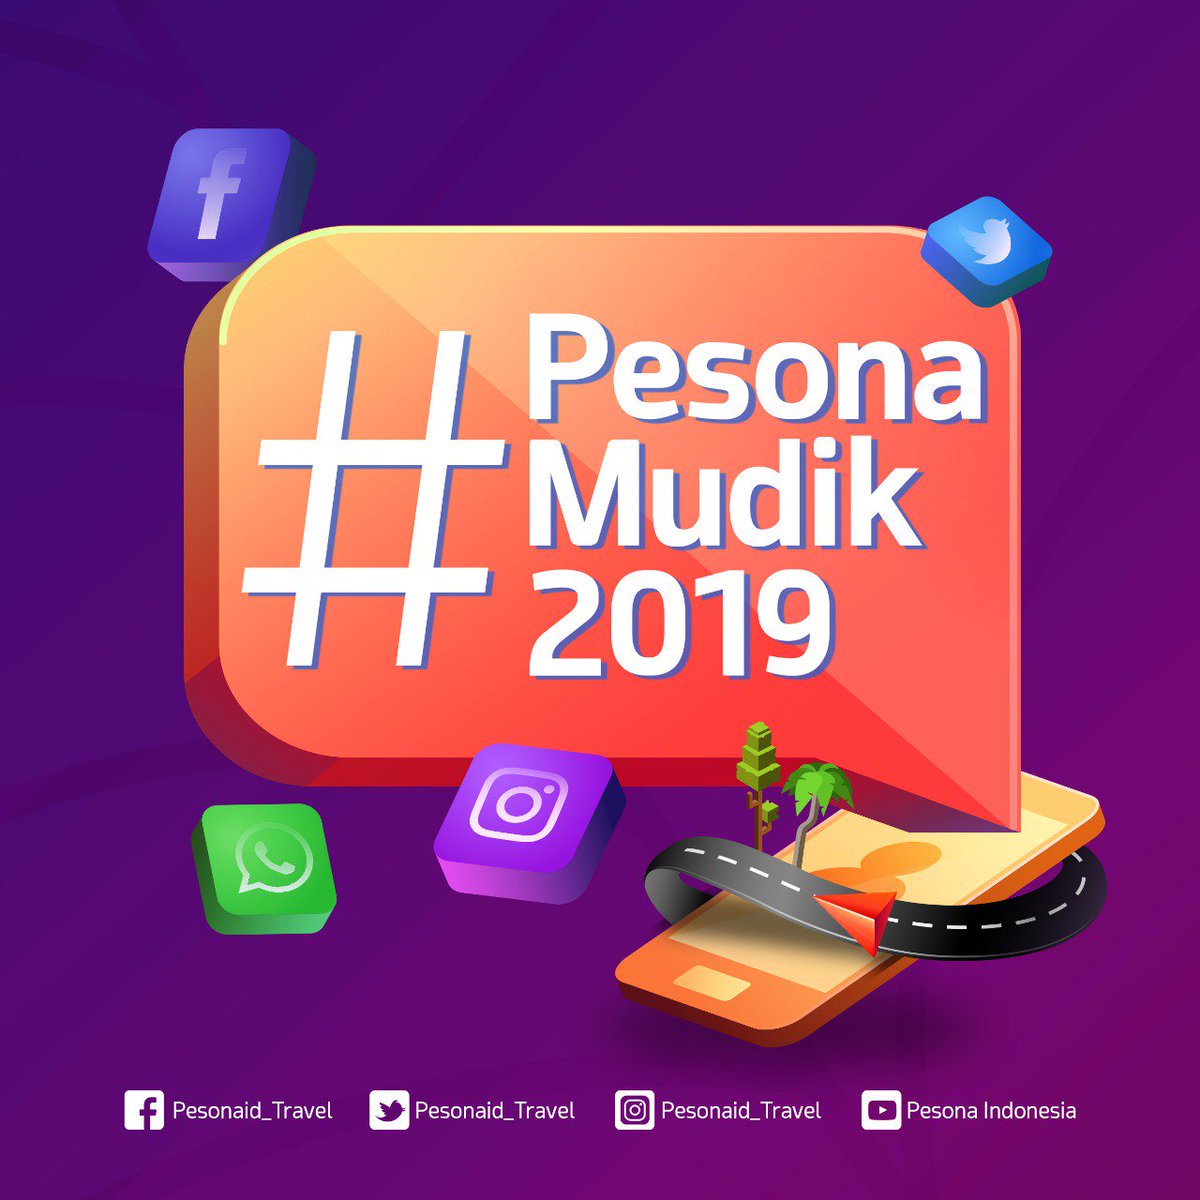 Periode II Lomba Foto Instagram #PesonaMudik2019 digelar 27 Mei – 10 Juni 2019. Sedangkan pengumuman dilakukan 15 Juni. #PesonaMudik20l9